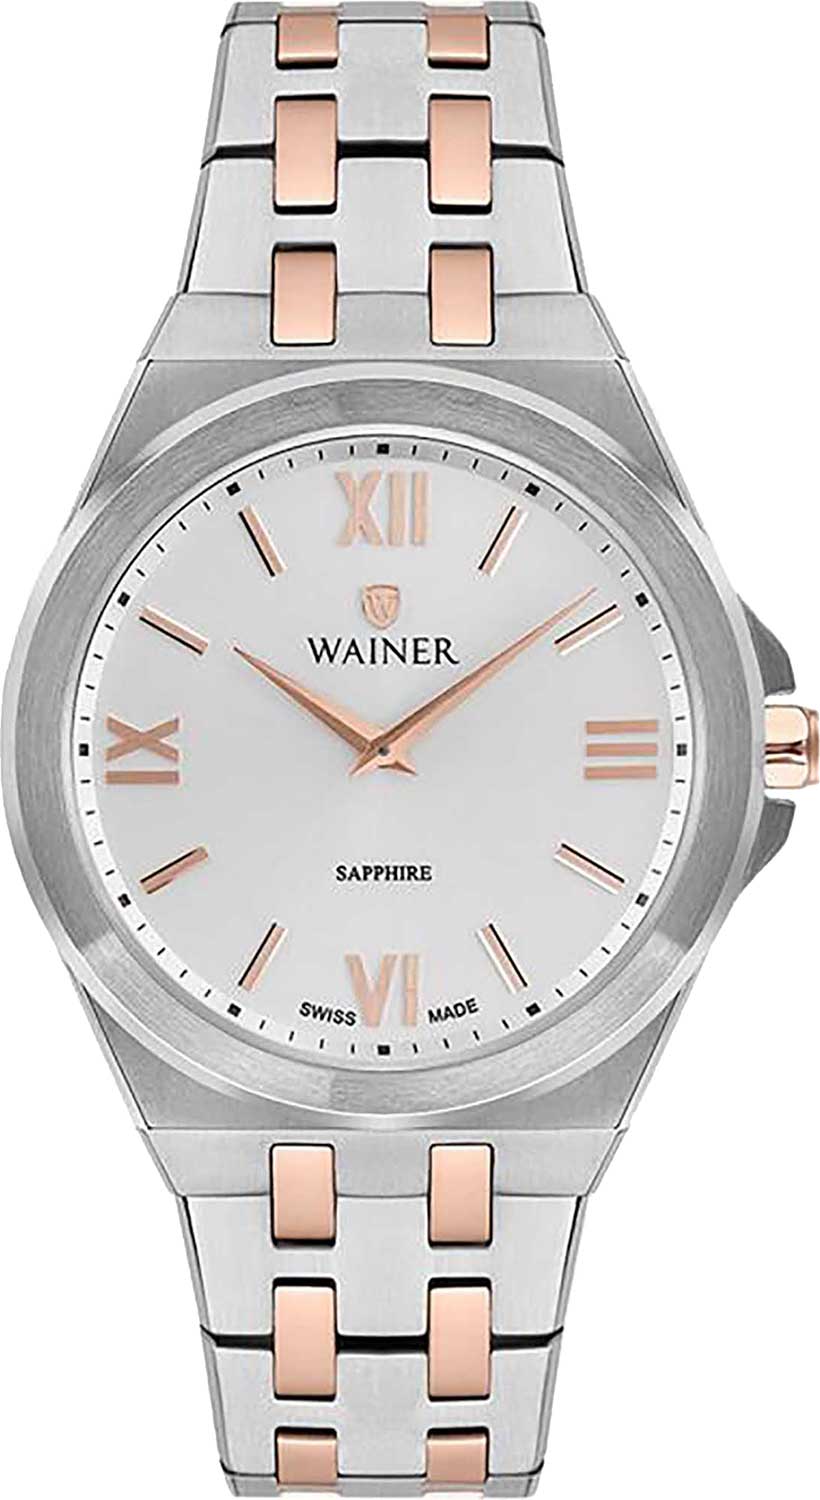    Wainer WA.11599-C